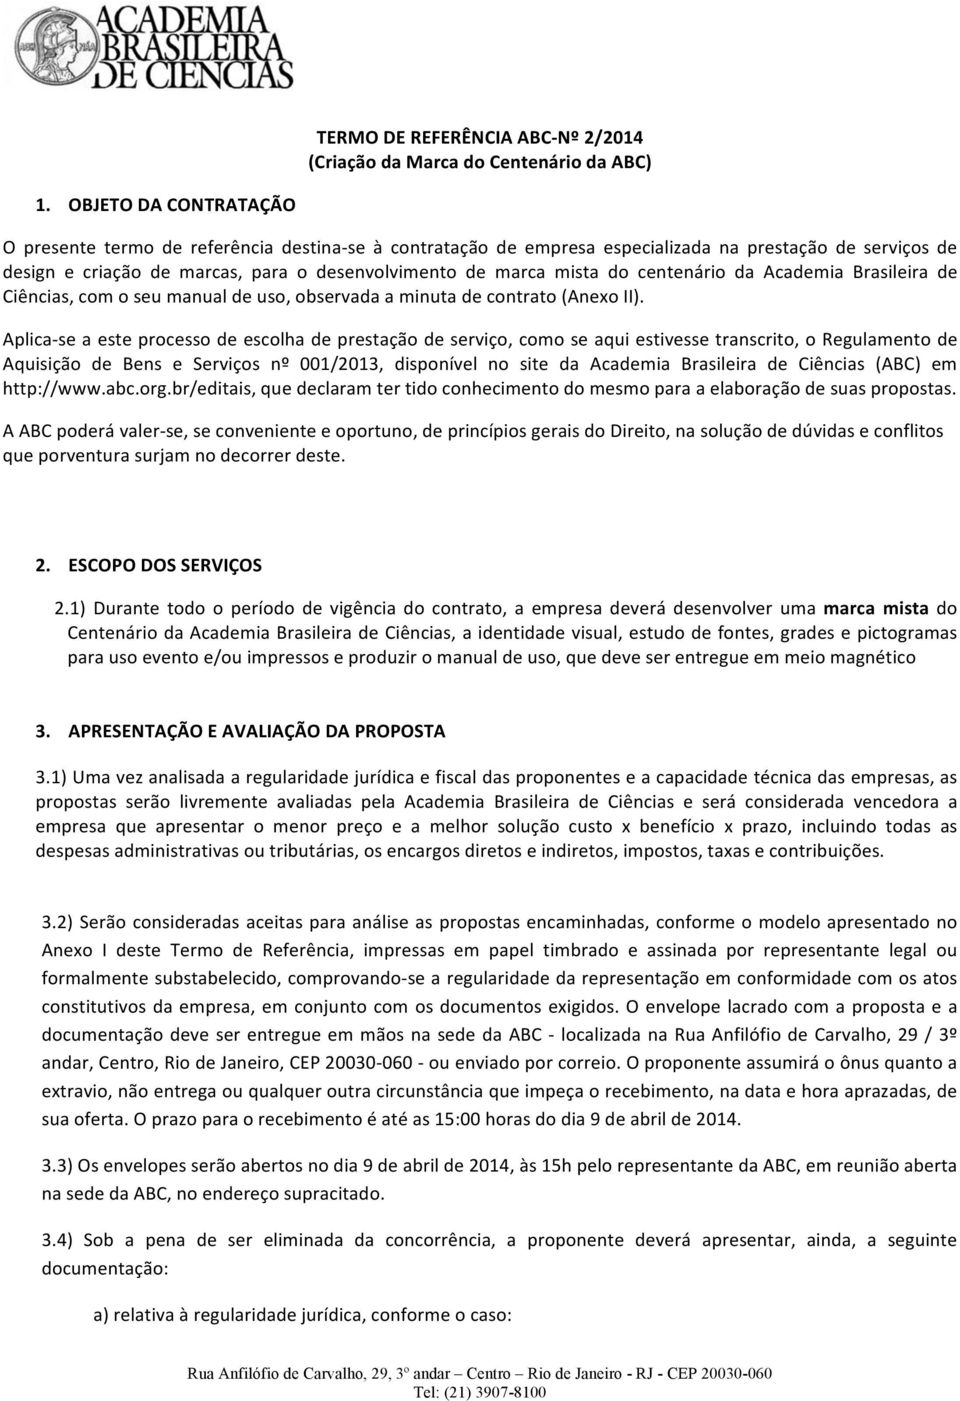 do centenário da Academia Brasileira de Ciências, com o seu manual de uso, observada a minuta de contrato (Anexo II).